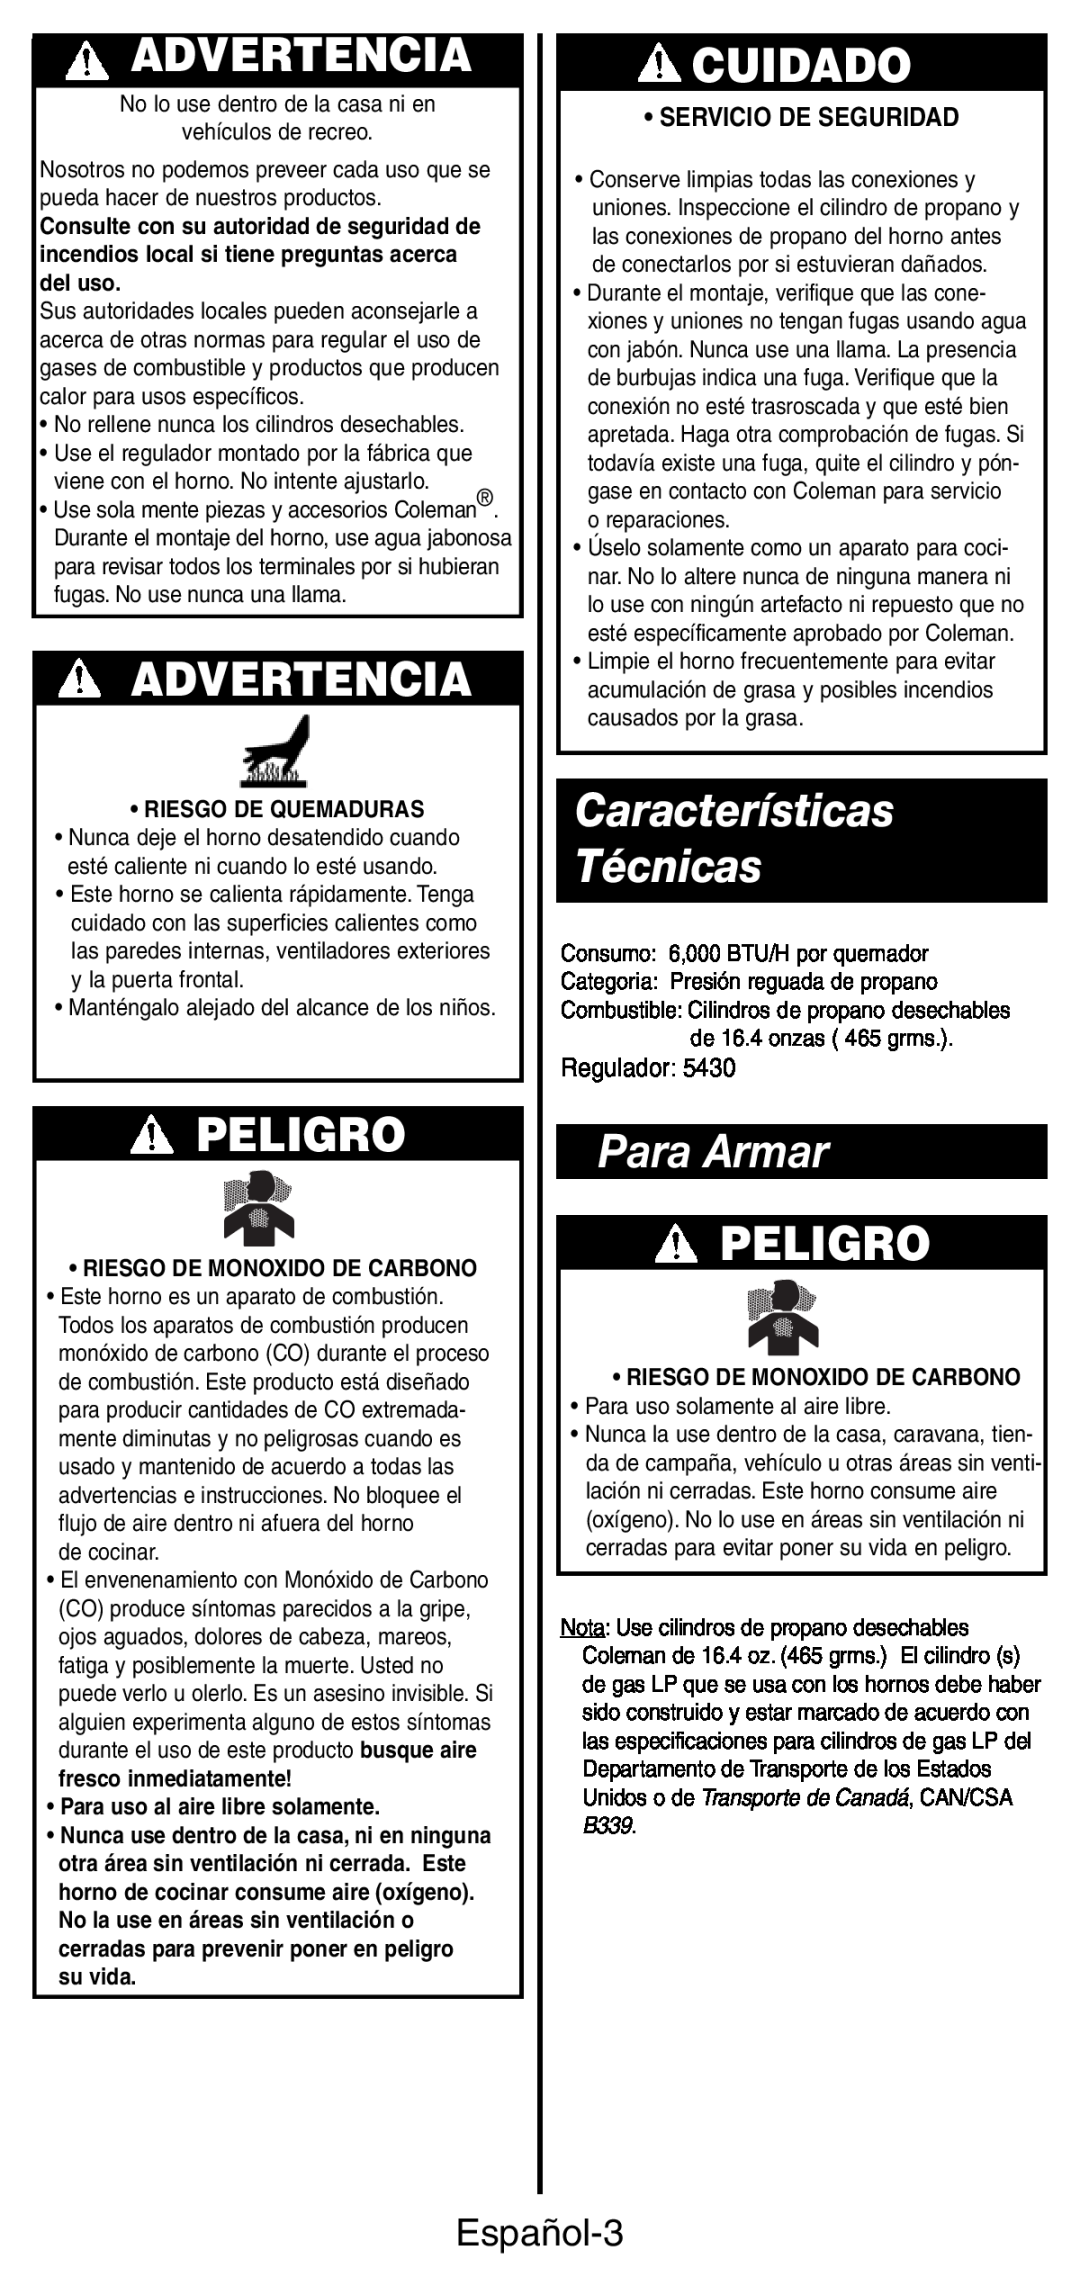 Coleman 9927 manual Características Técnicas, Para Armar, Advertencia, Peligro, Cuidado, Español-3, •Servicio De Seguridad 